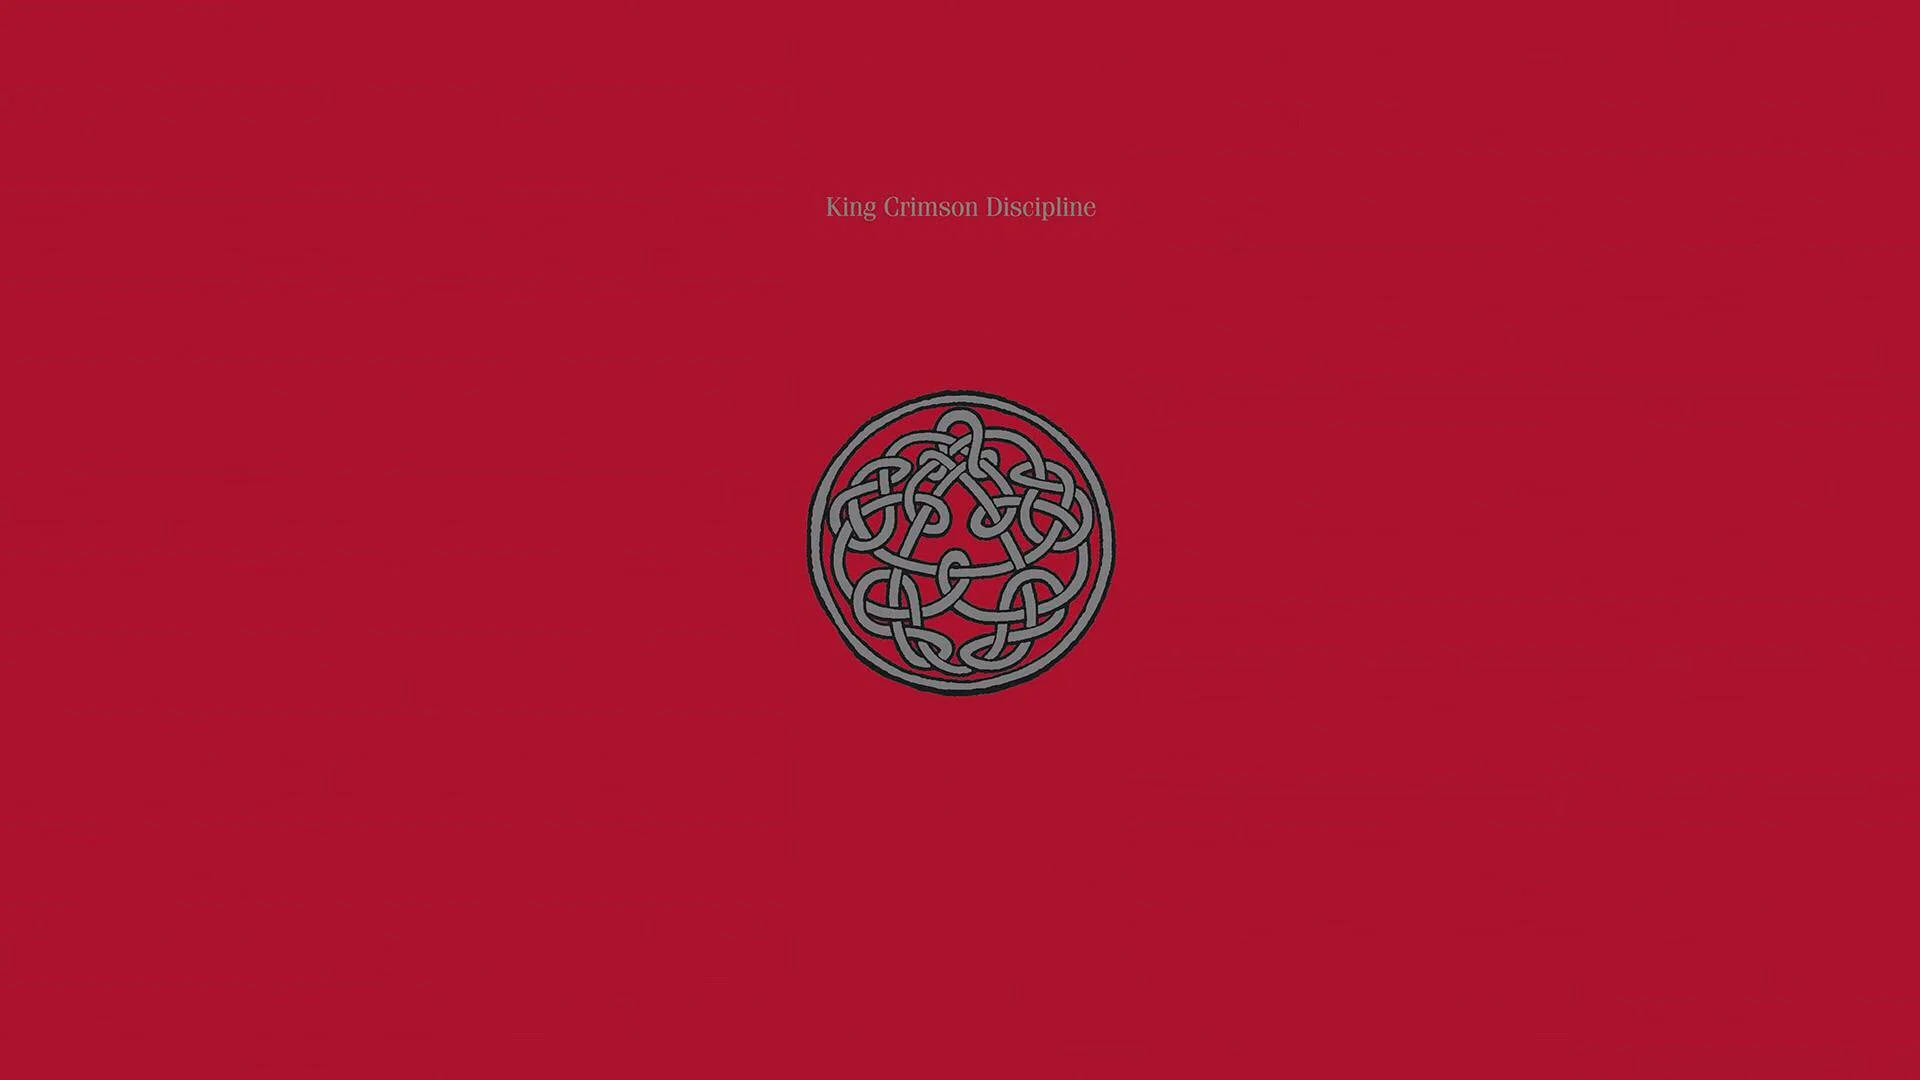 King Crimson (king): Được biết đến như một vị vua trong thế giới manga nổi tiếng Jojo\'s Bizarre Adventure, King Crimson là một nhân vật đầy bí ẩn và sức mạnh. Nếu bất kỳ fan của loạt manga này muốn khám phá thêm về nhân vật này, hãy xem hình ảnh liên quan đến King Crimson.